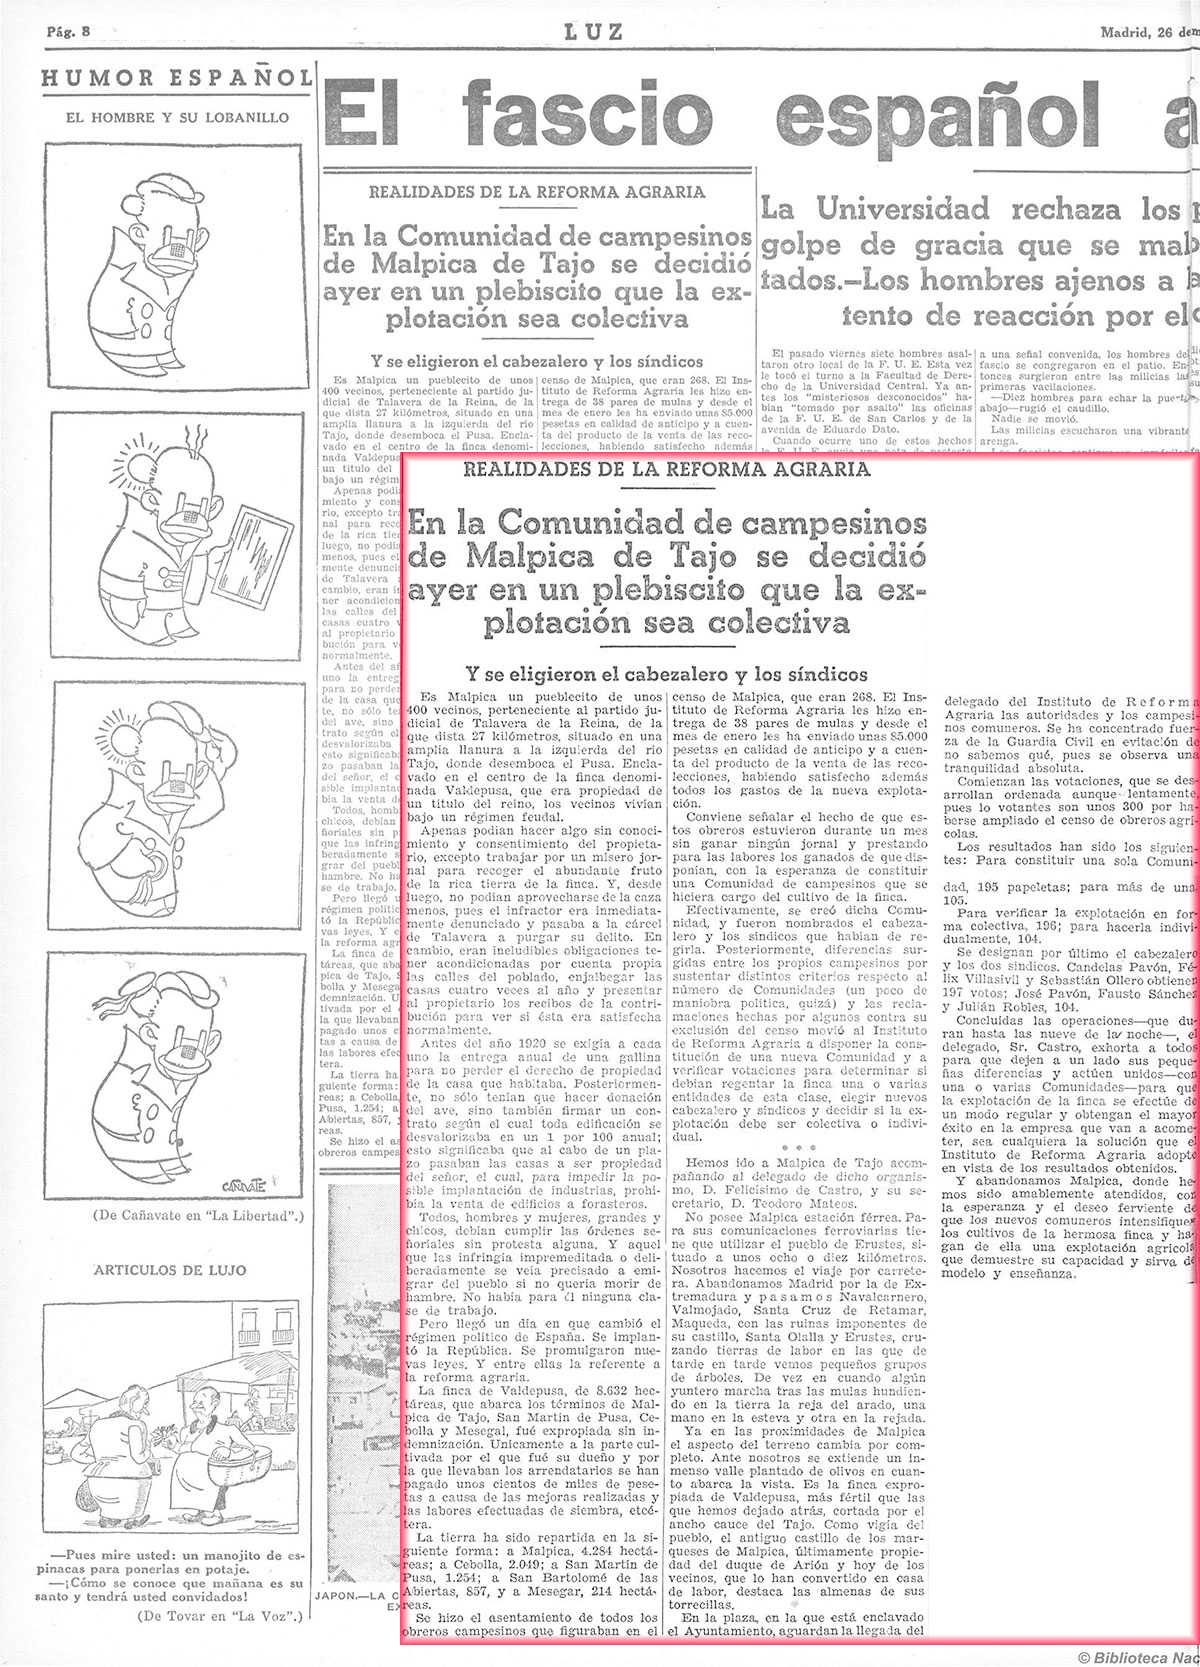 Luz 26-3-1934, pagina 8. En la Comunidad de campesinos de Malpica de Tajo se decidió ayer en un plebiscito que la explotaión sea colectiva